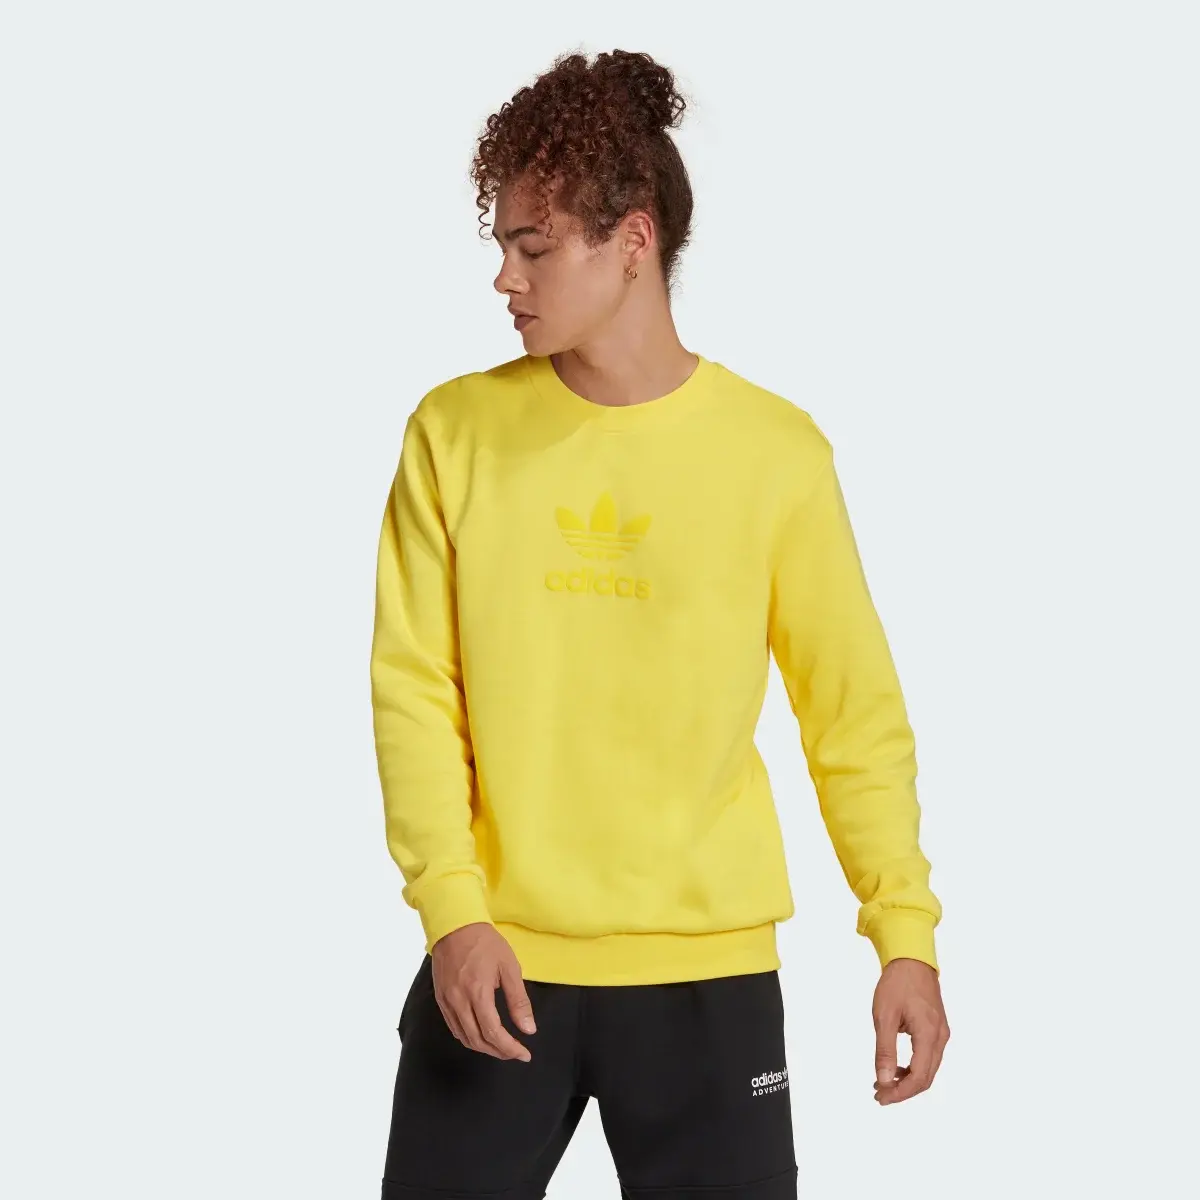 Adidas Trefoil Series Street Sweatshirt. 2